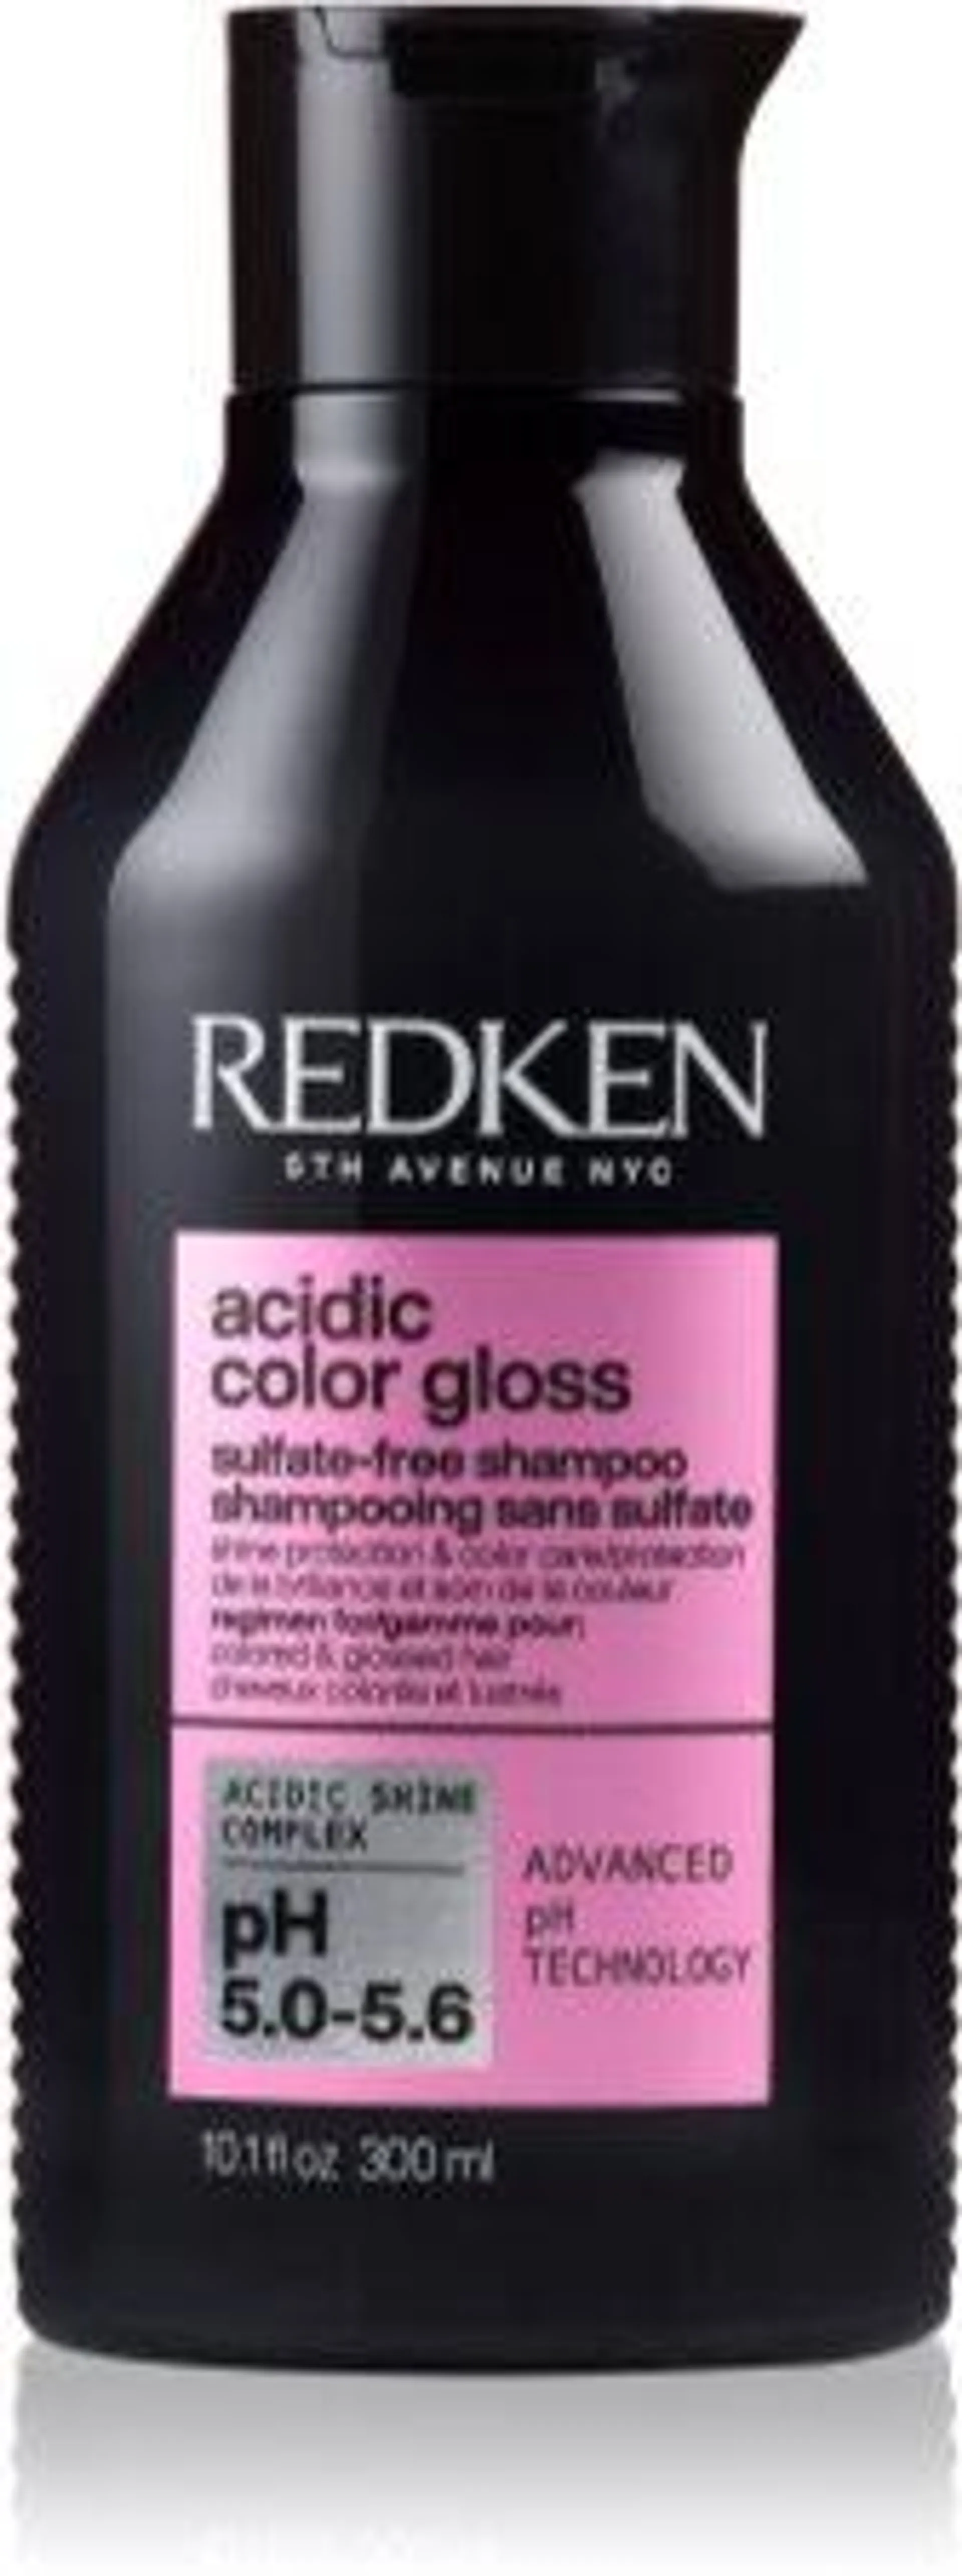 Acidic Color Gloss